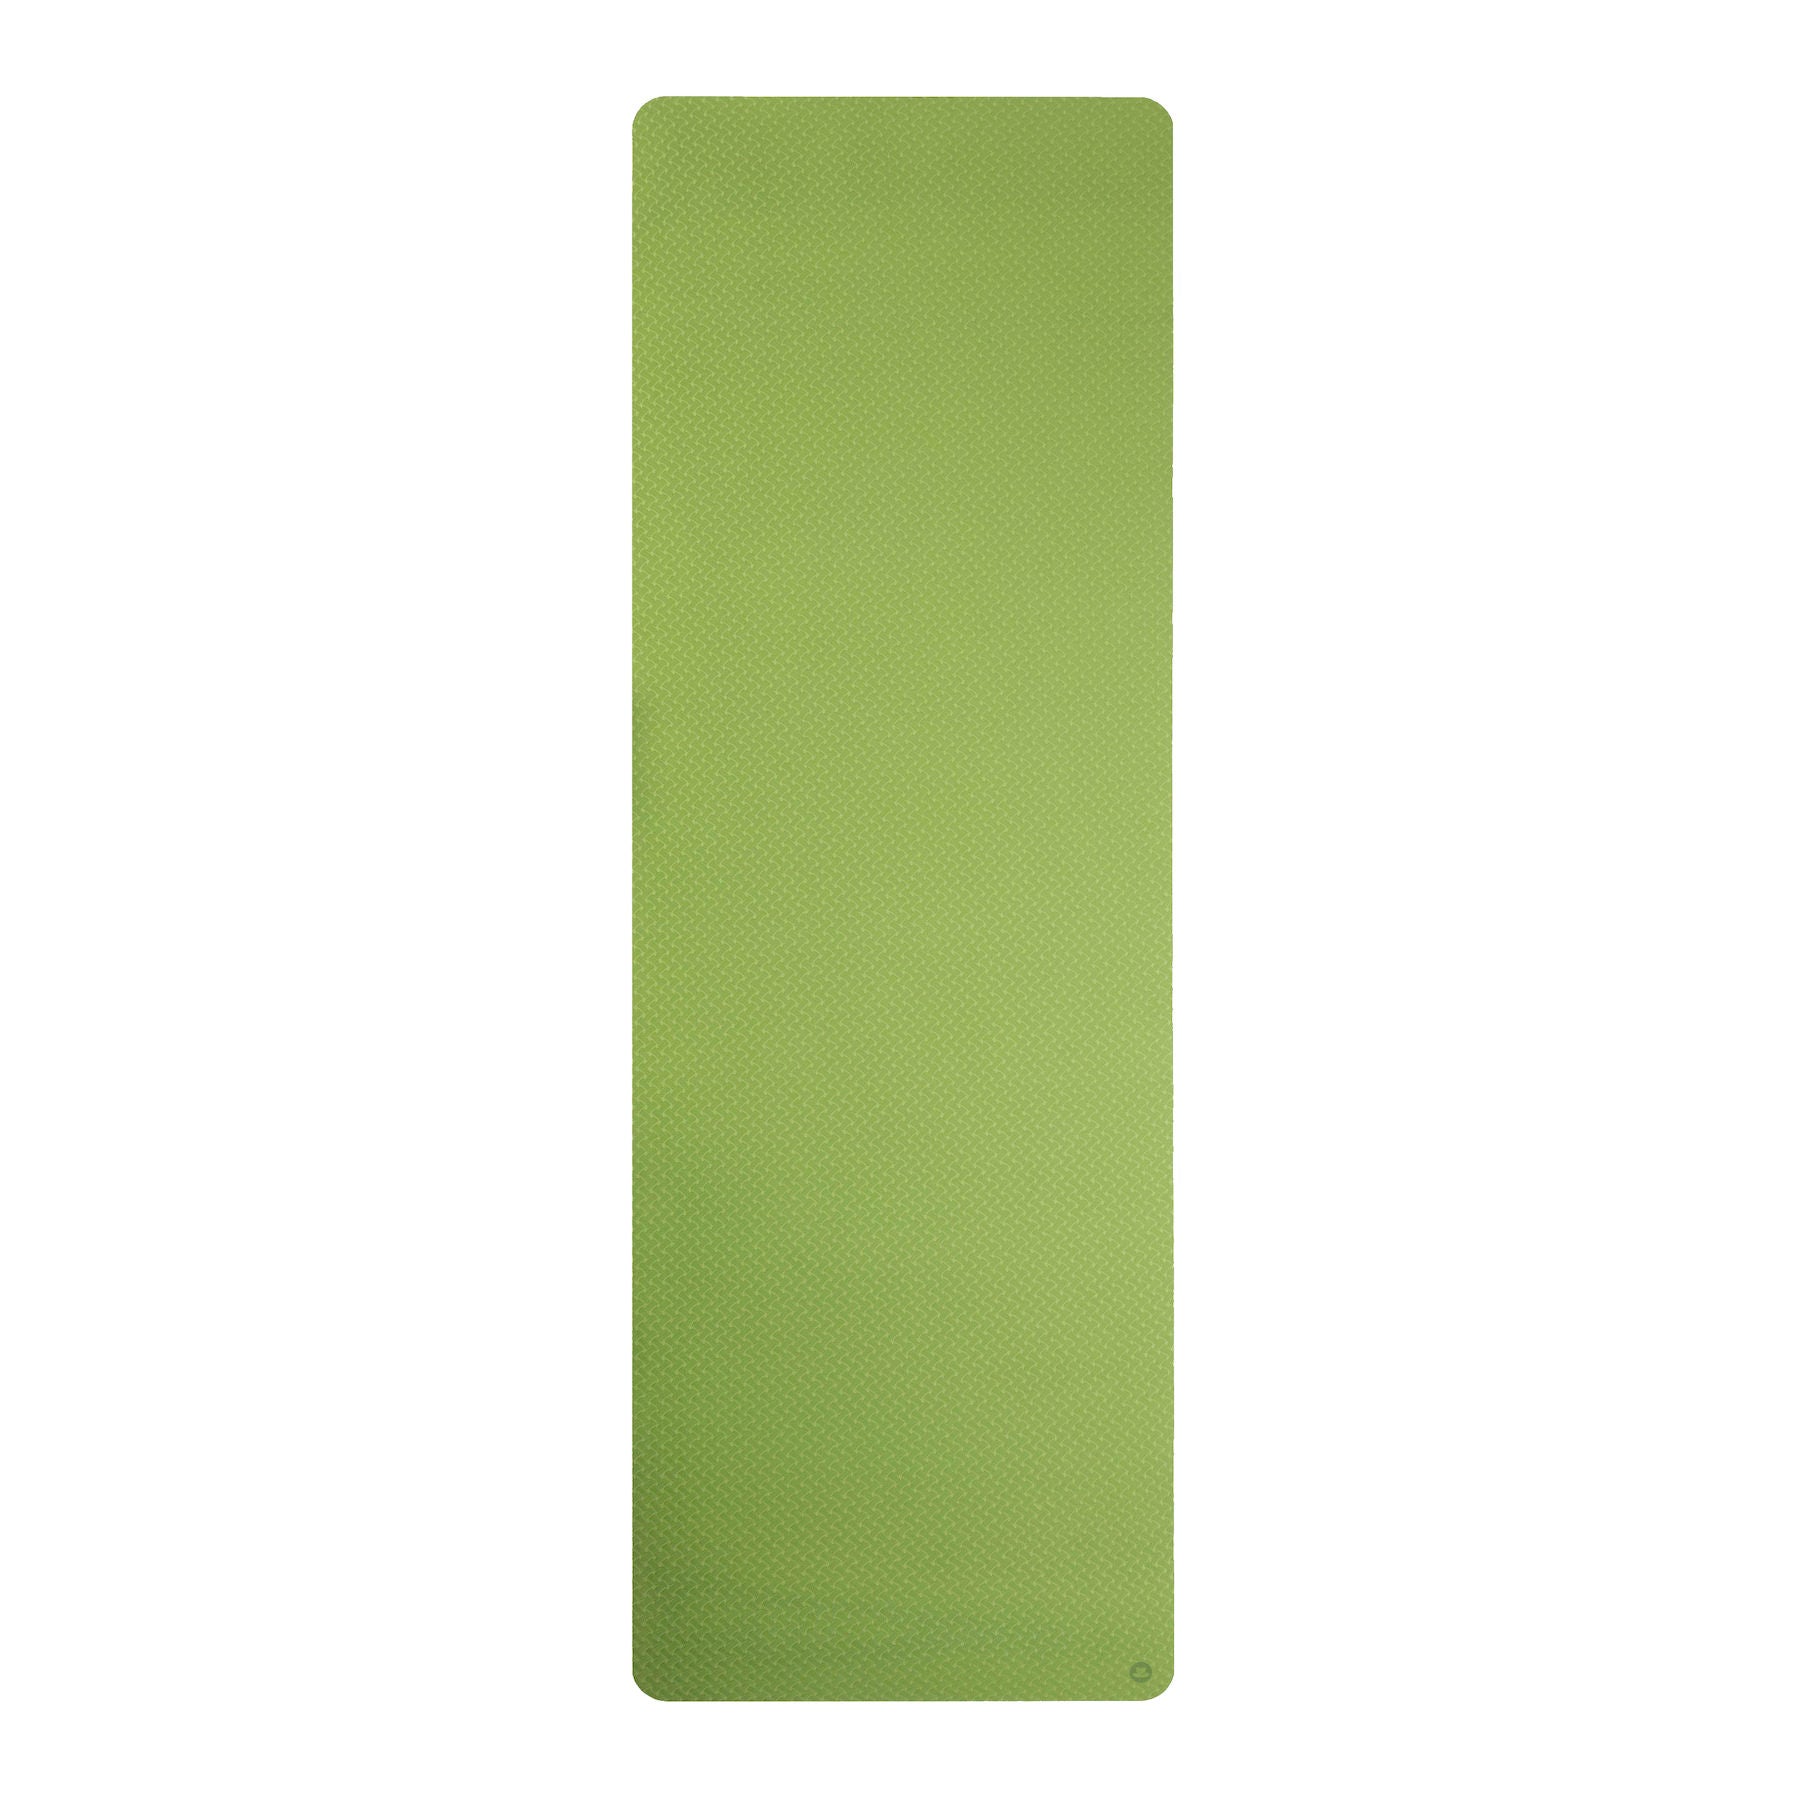 Tapis de yoga en TPE vert, extra léger, sans PVC, écologique, épaisseur 6mm